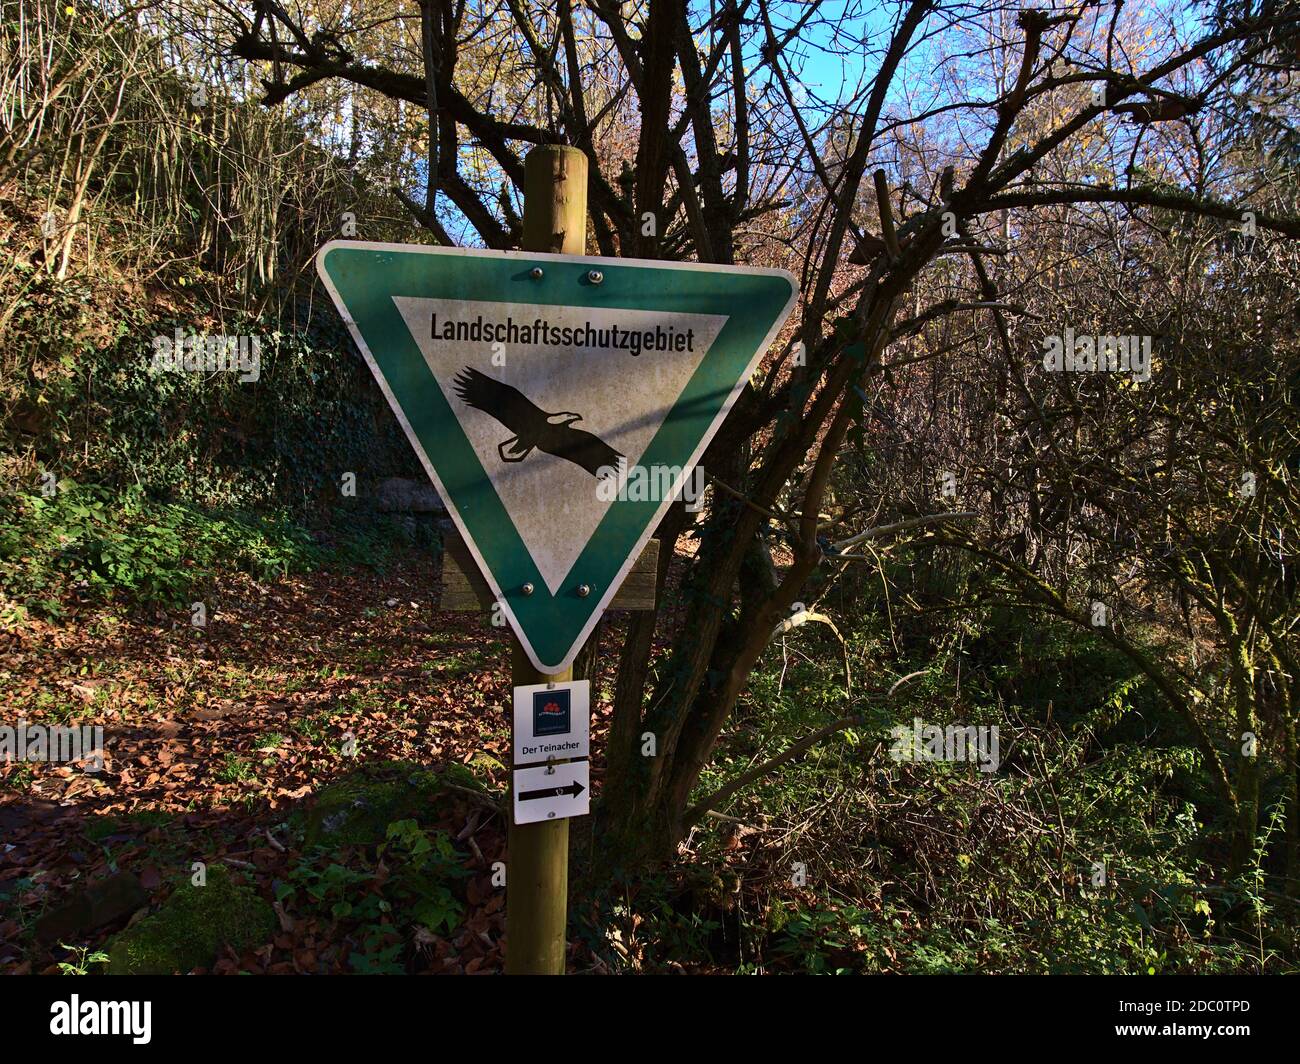 Bad Teinach-Zavelstein, Germania - 11/14/2020: Simbolo triangolare che indica un'area di conservazione del paesaggio (in tedesco Landschaftsschutzgebiet) nella Foresta Nera. Foto Stock